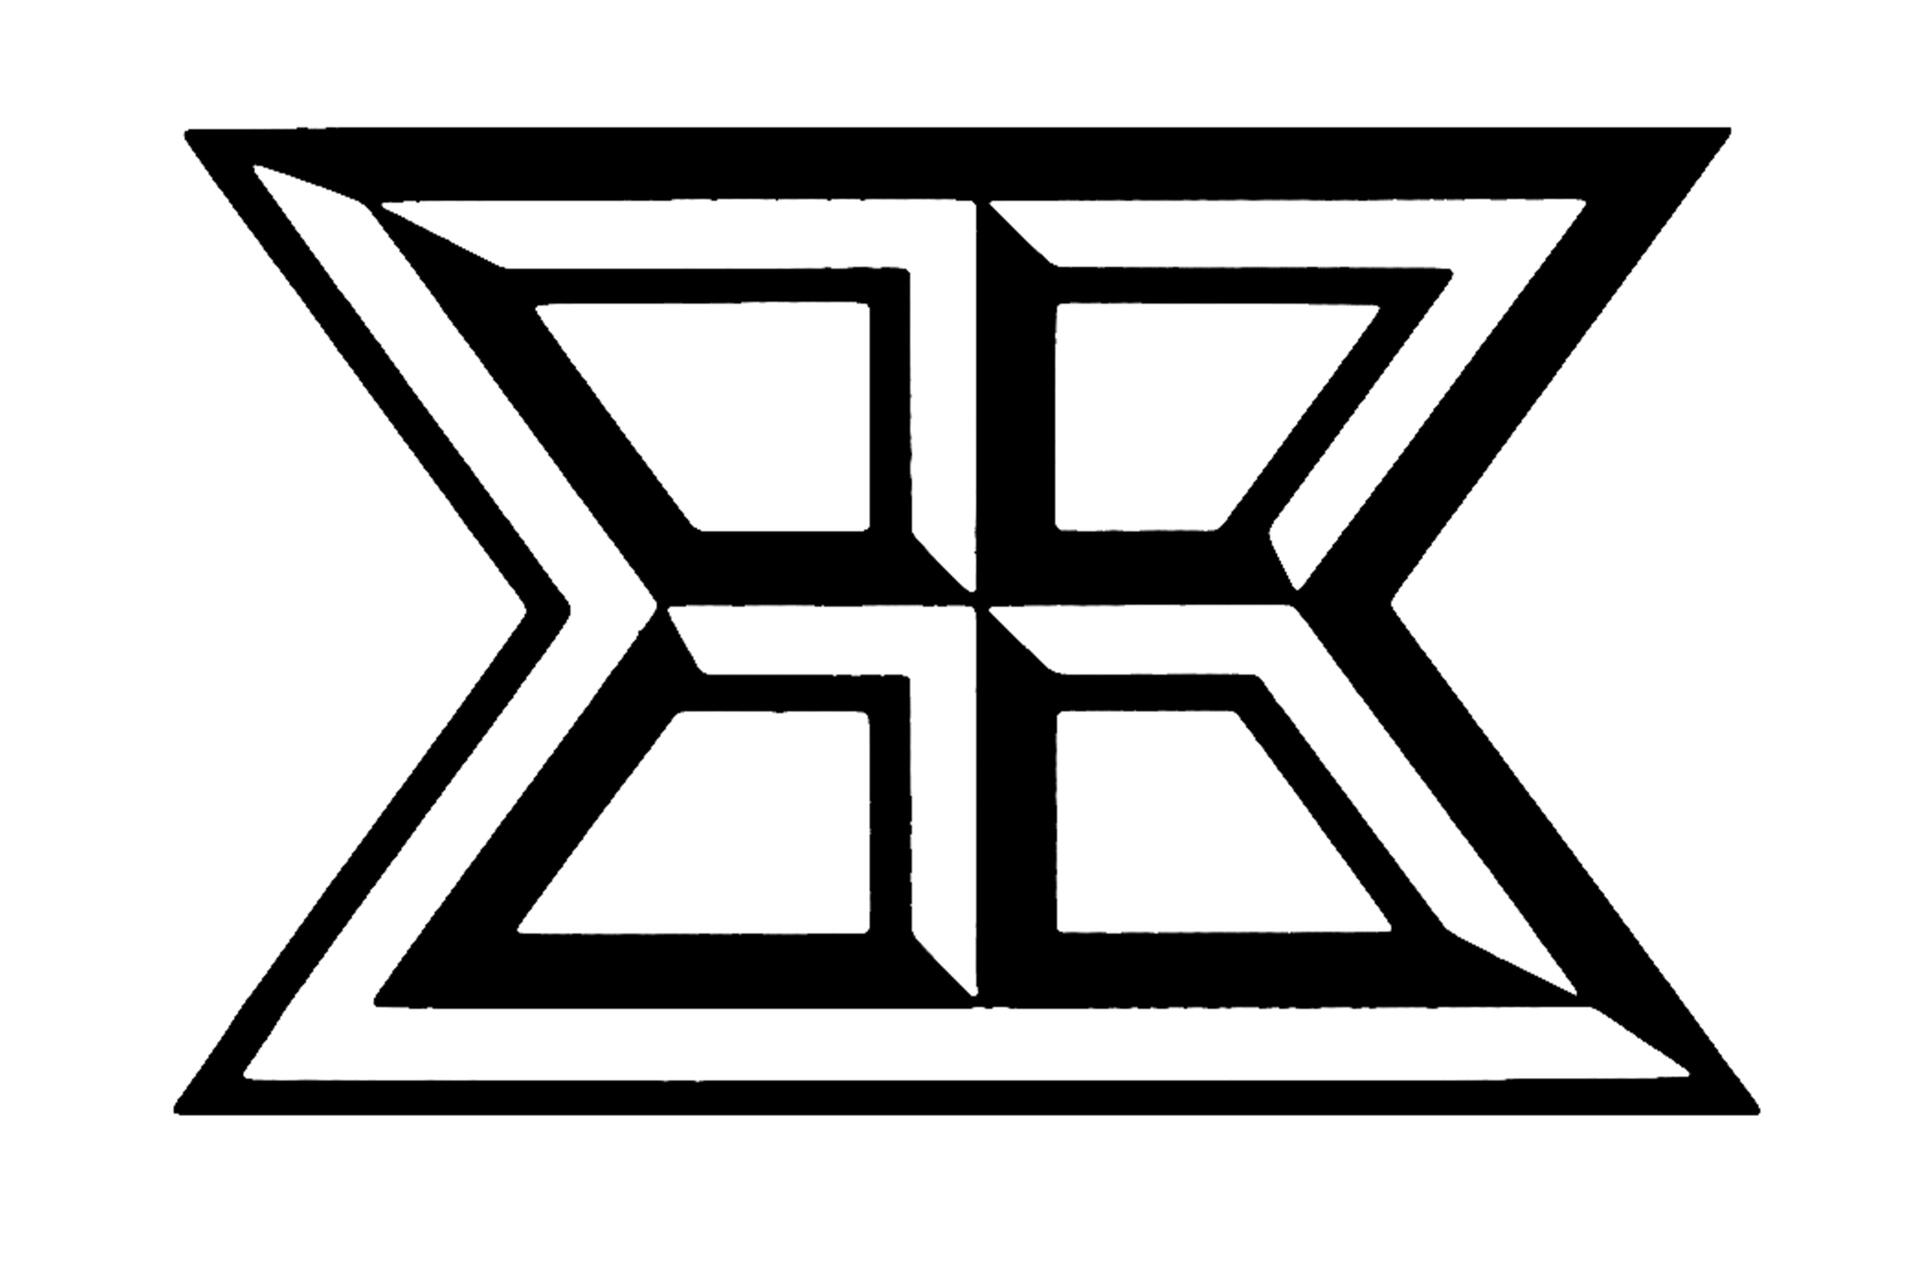 19A-79_Baxter-Travenol Logo_Morton Goldsholl